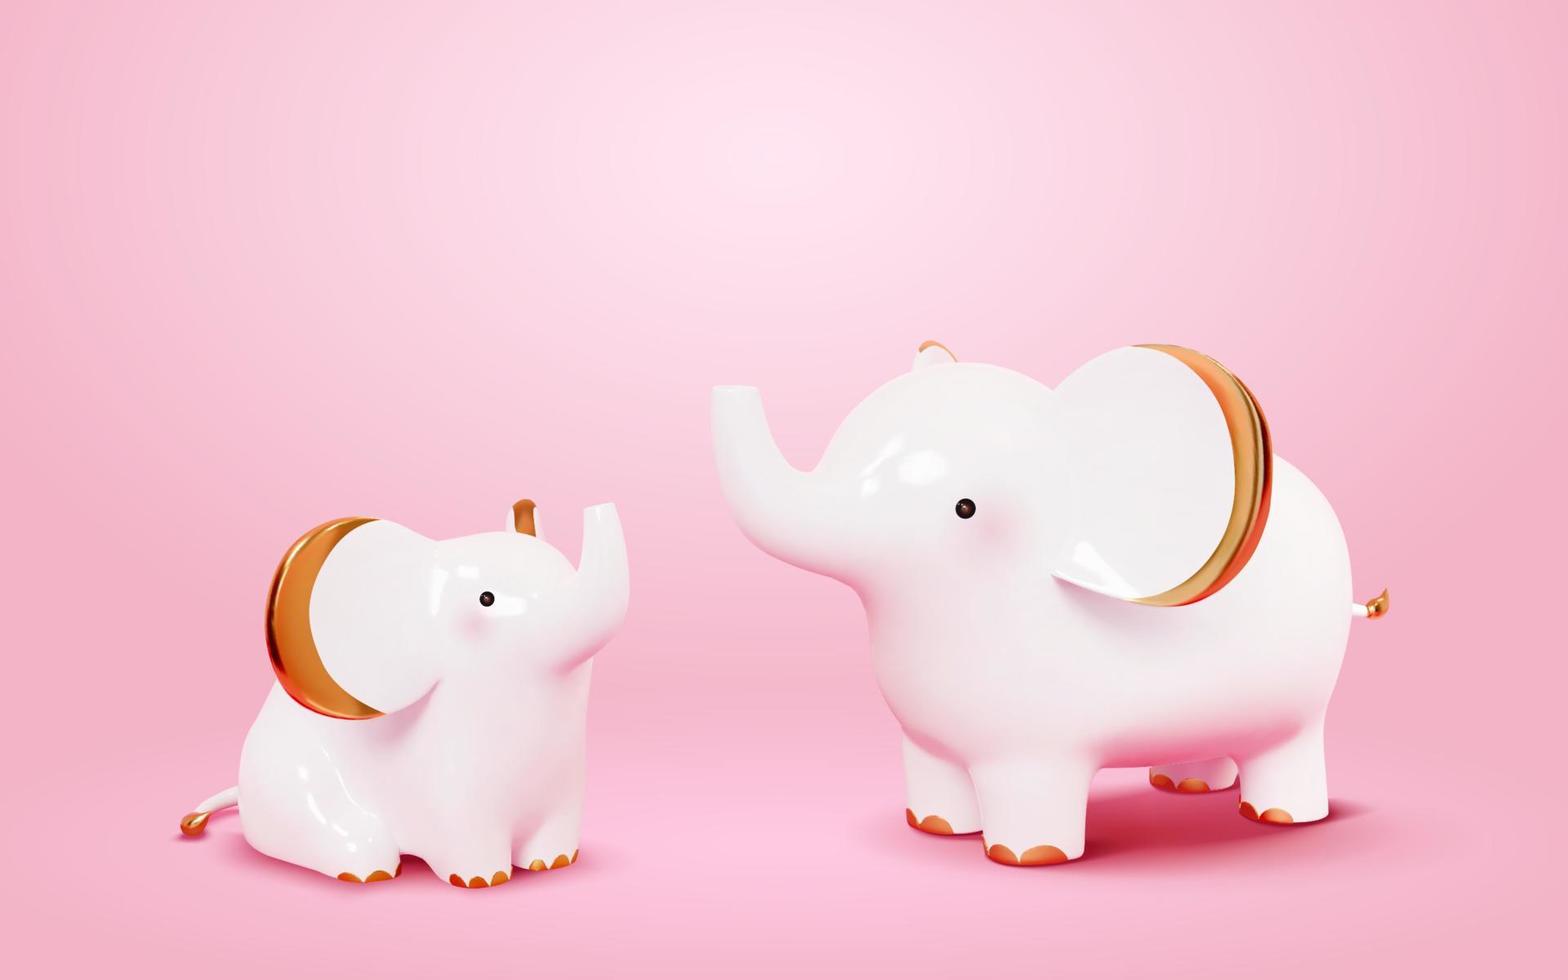 söt elefant figurer. 3d illustration av två vit elefanter höjning deras trunkar med guld öron, tassar, och svansar. dekorationer tillverkad av porslin vektor